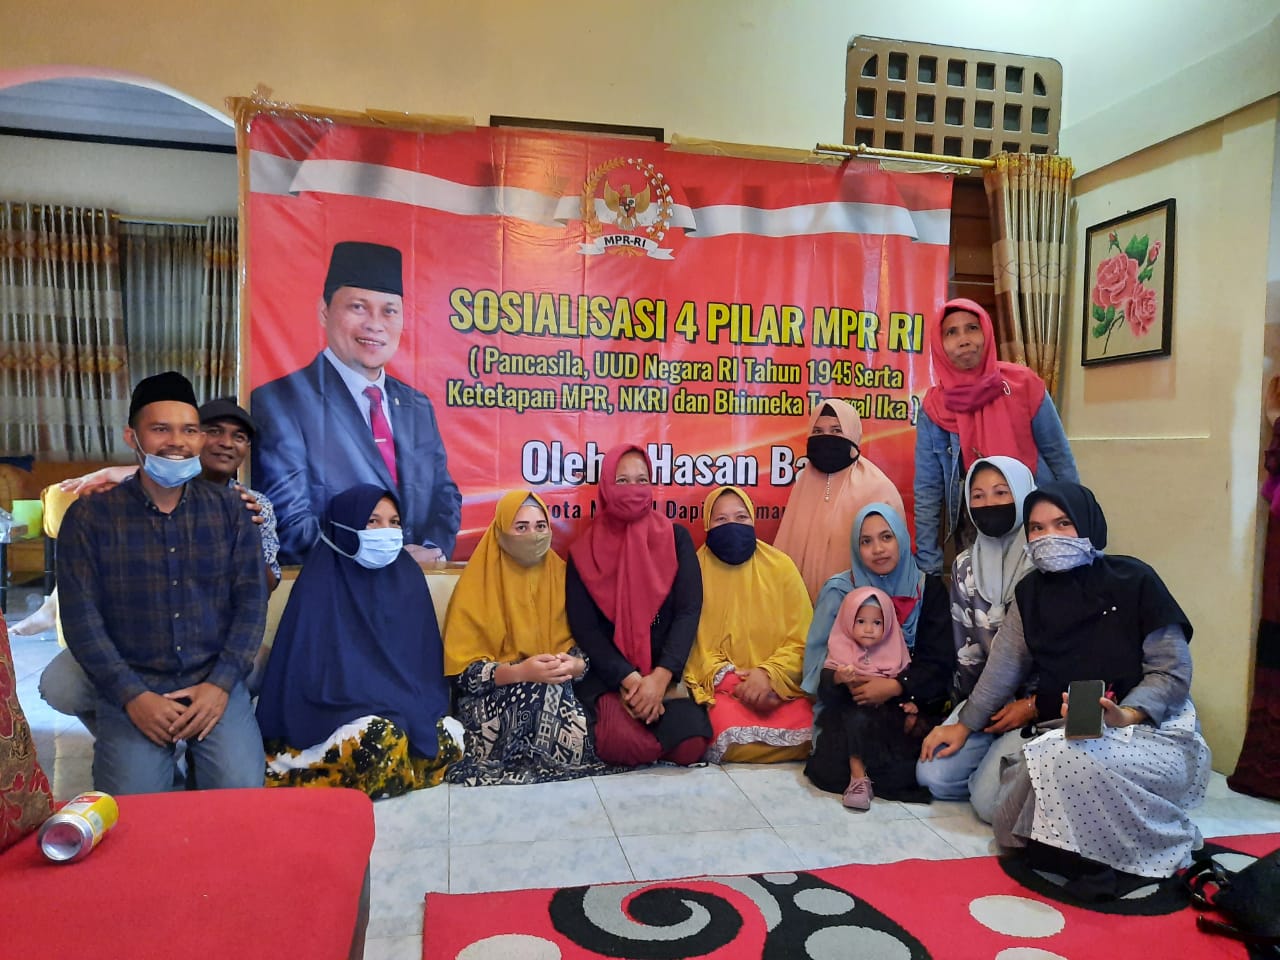 Hasan Basri Sosialisasi 4 Pilar Kebangsaan dengan Warga KKPUS Tarakan, Pembekalan untuk Kaum Perempuan